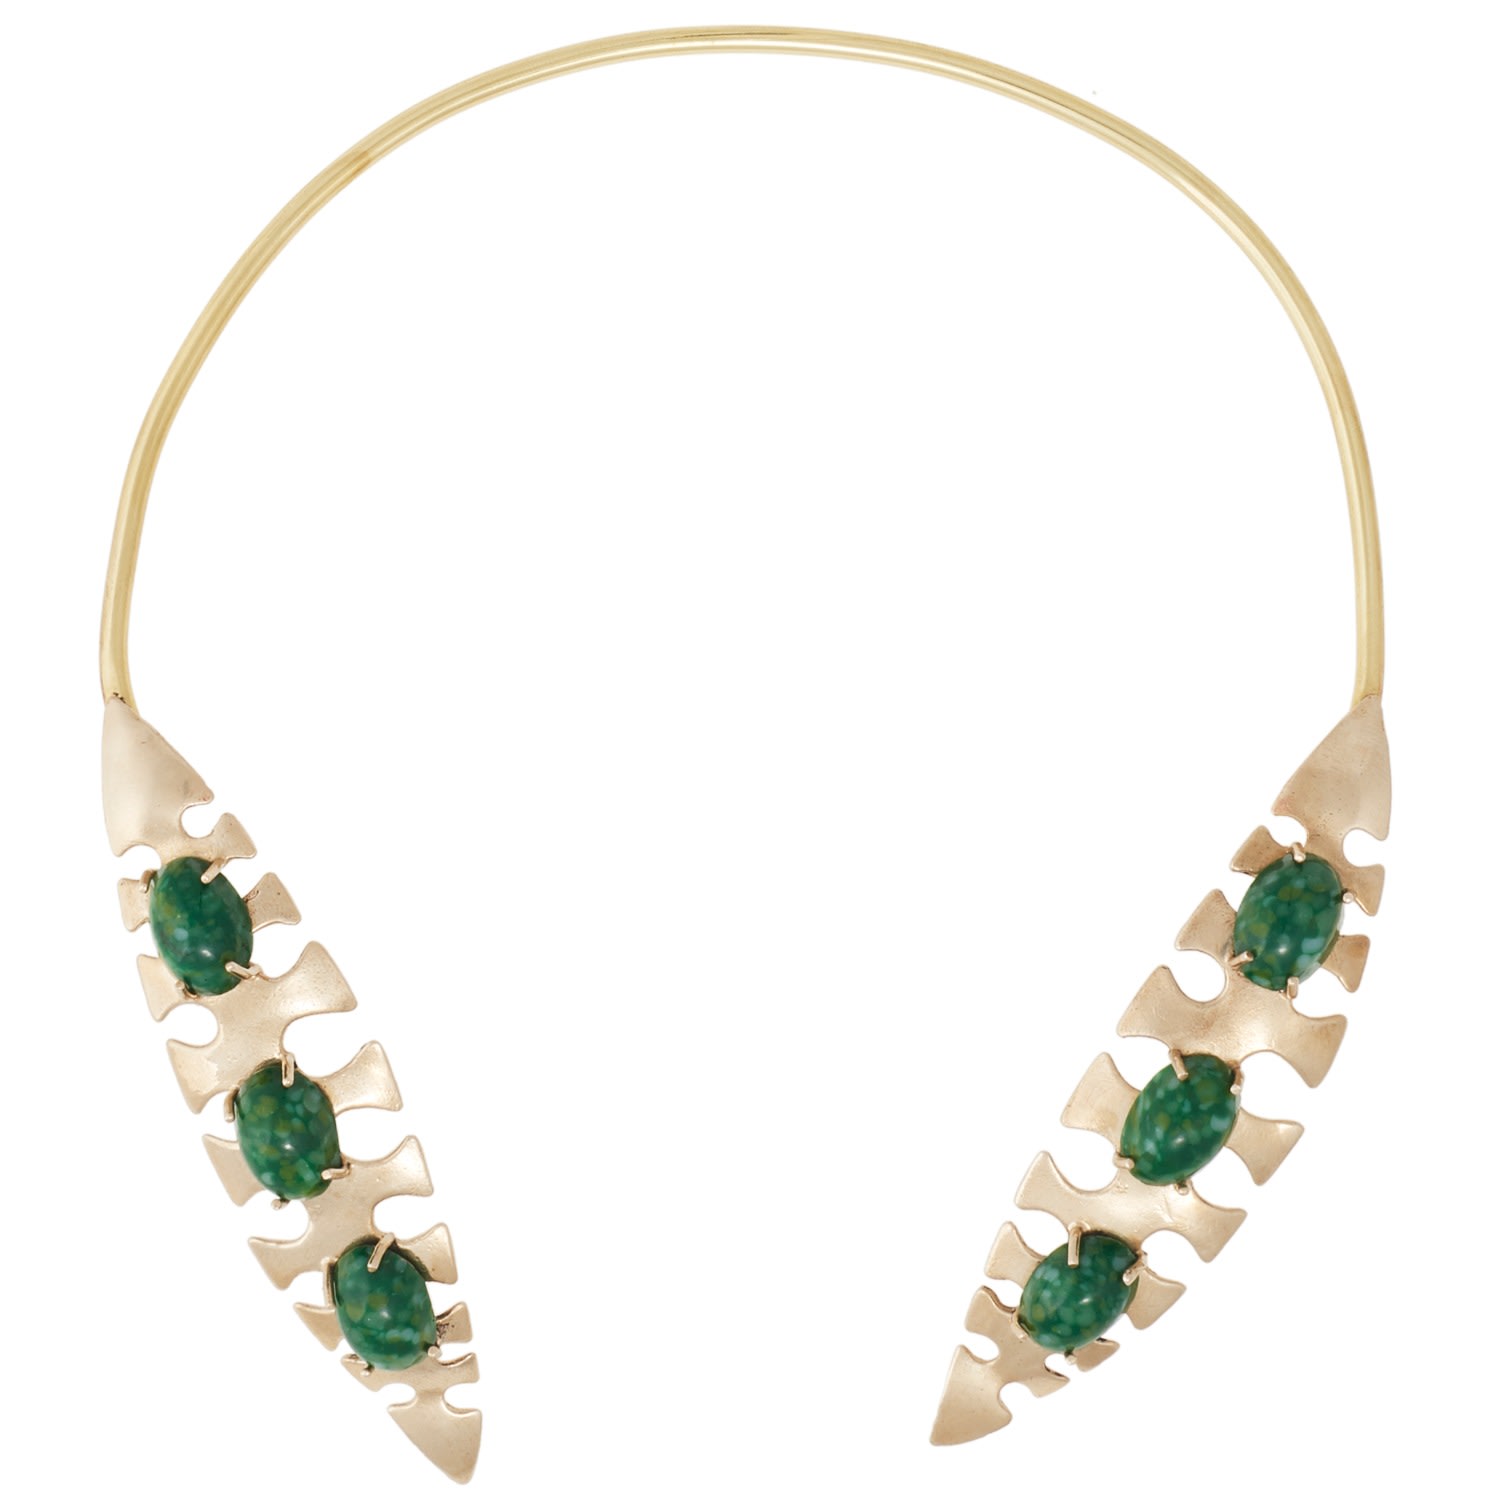 Castlecliff Women's Gold / Green Palm Collar